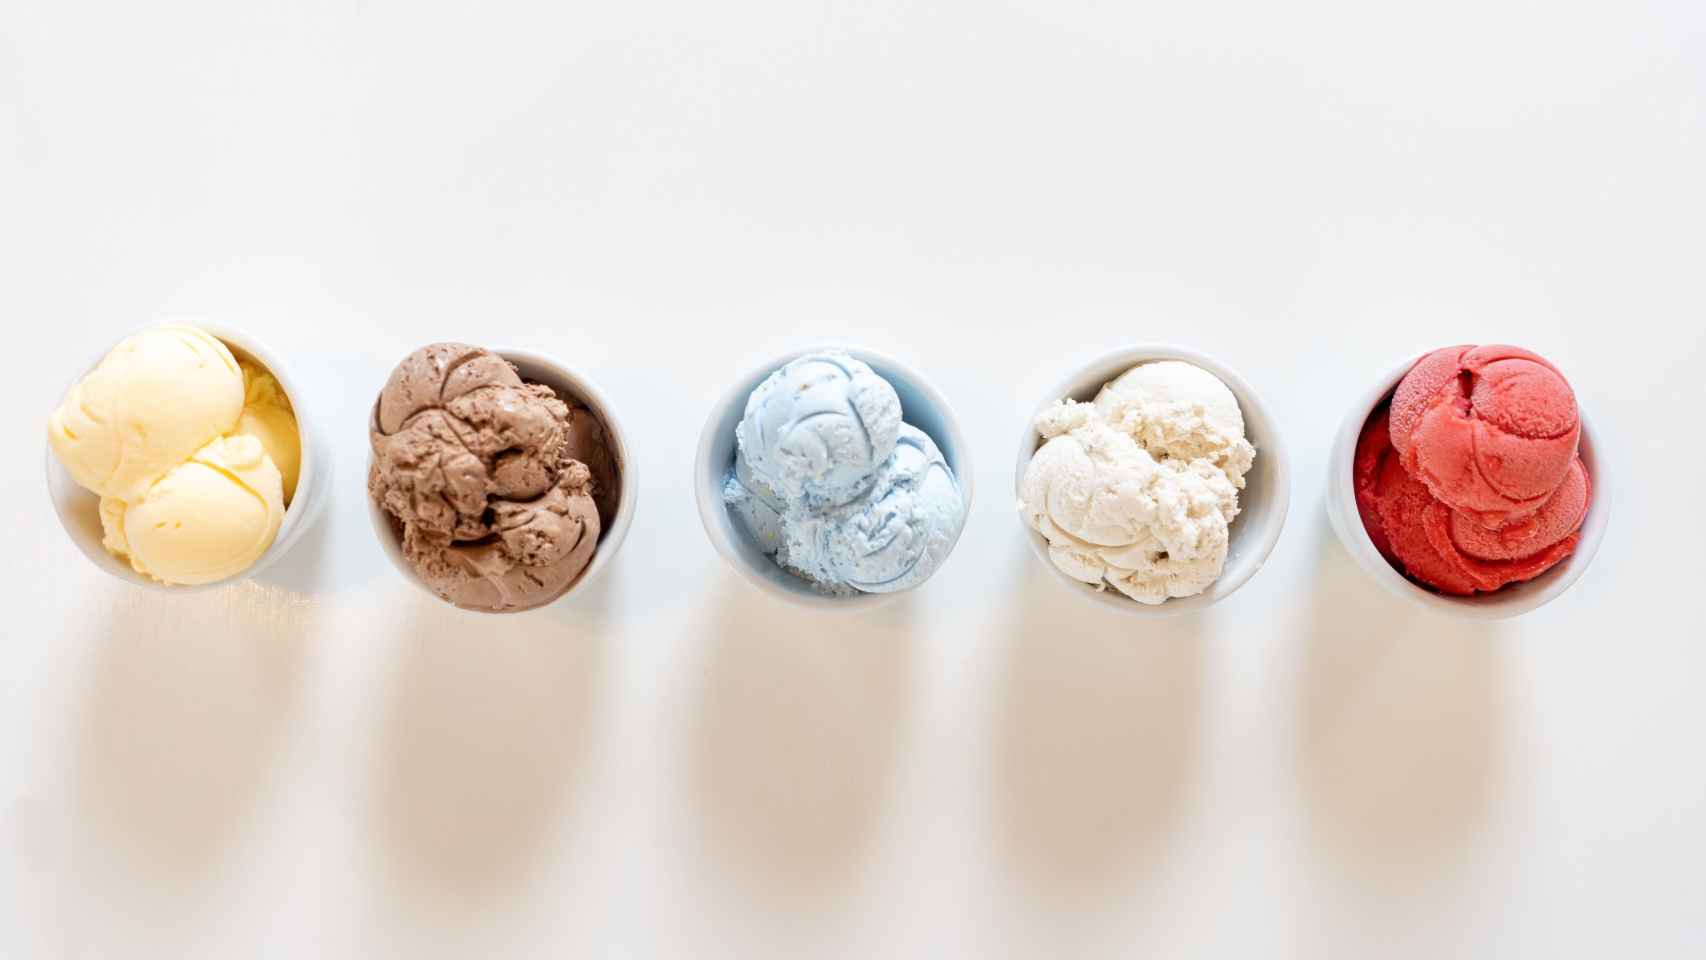 Tarrinas de helado de diferentes sabores / UNSPLASH